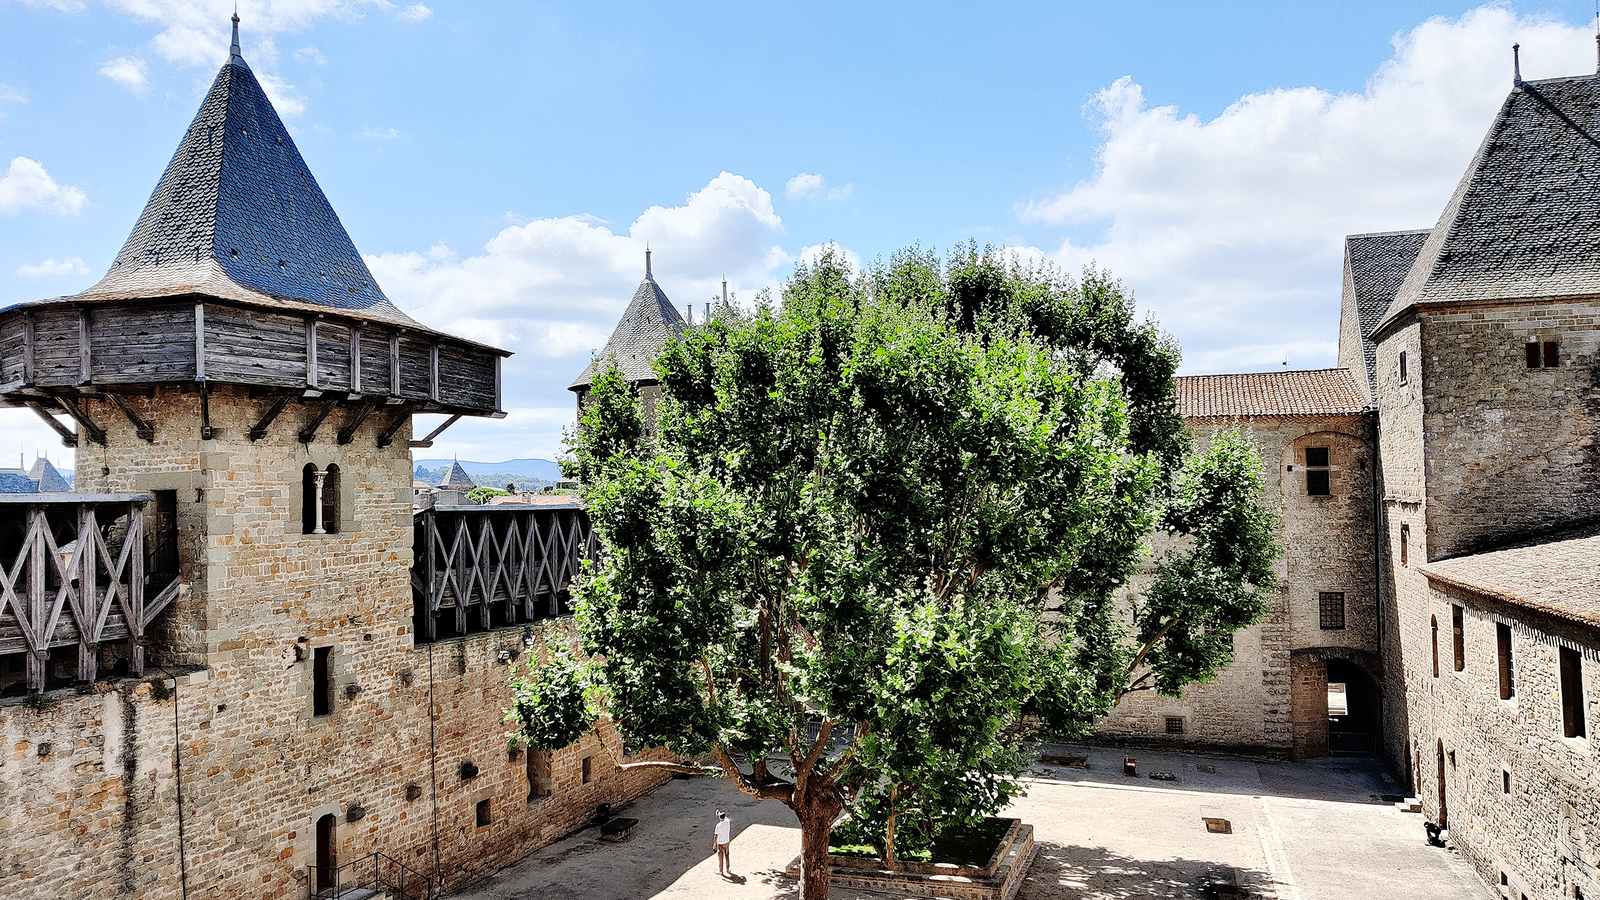 Klein_Carcassonne__Die_Cite_de_Carcassonne_zaehlt_zu_den_am_besten_erhaltenen_Burganlagen_in_Europa_und_wurde_ins_UNESCO_Weltkulturerbe_aufgenommen__2_